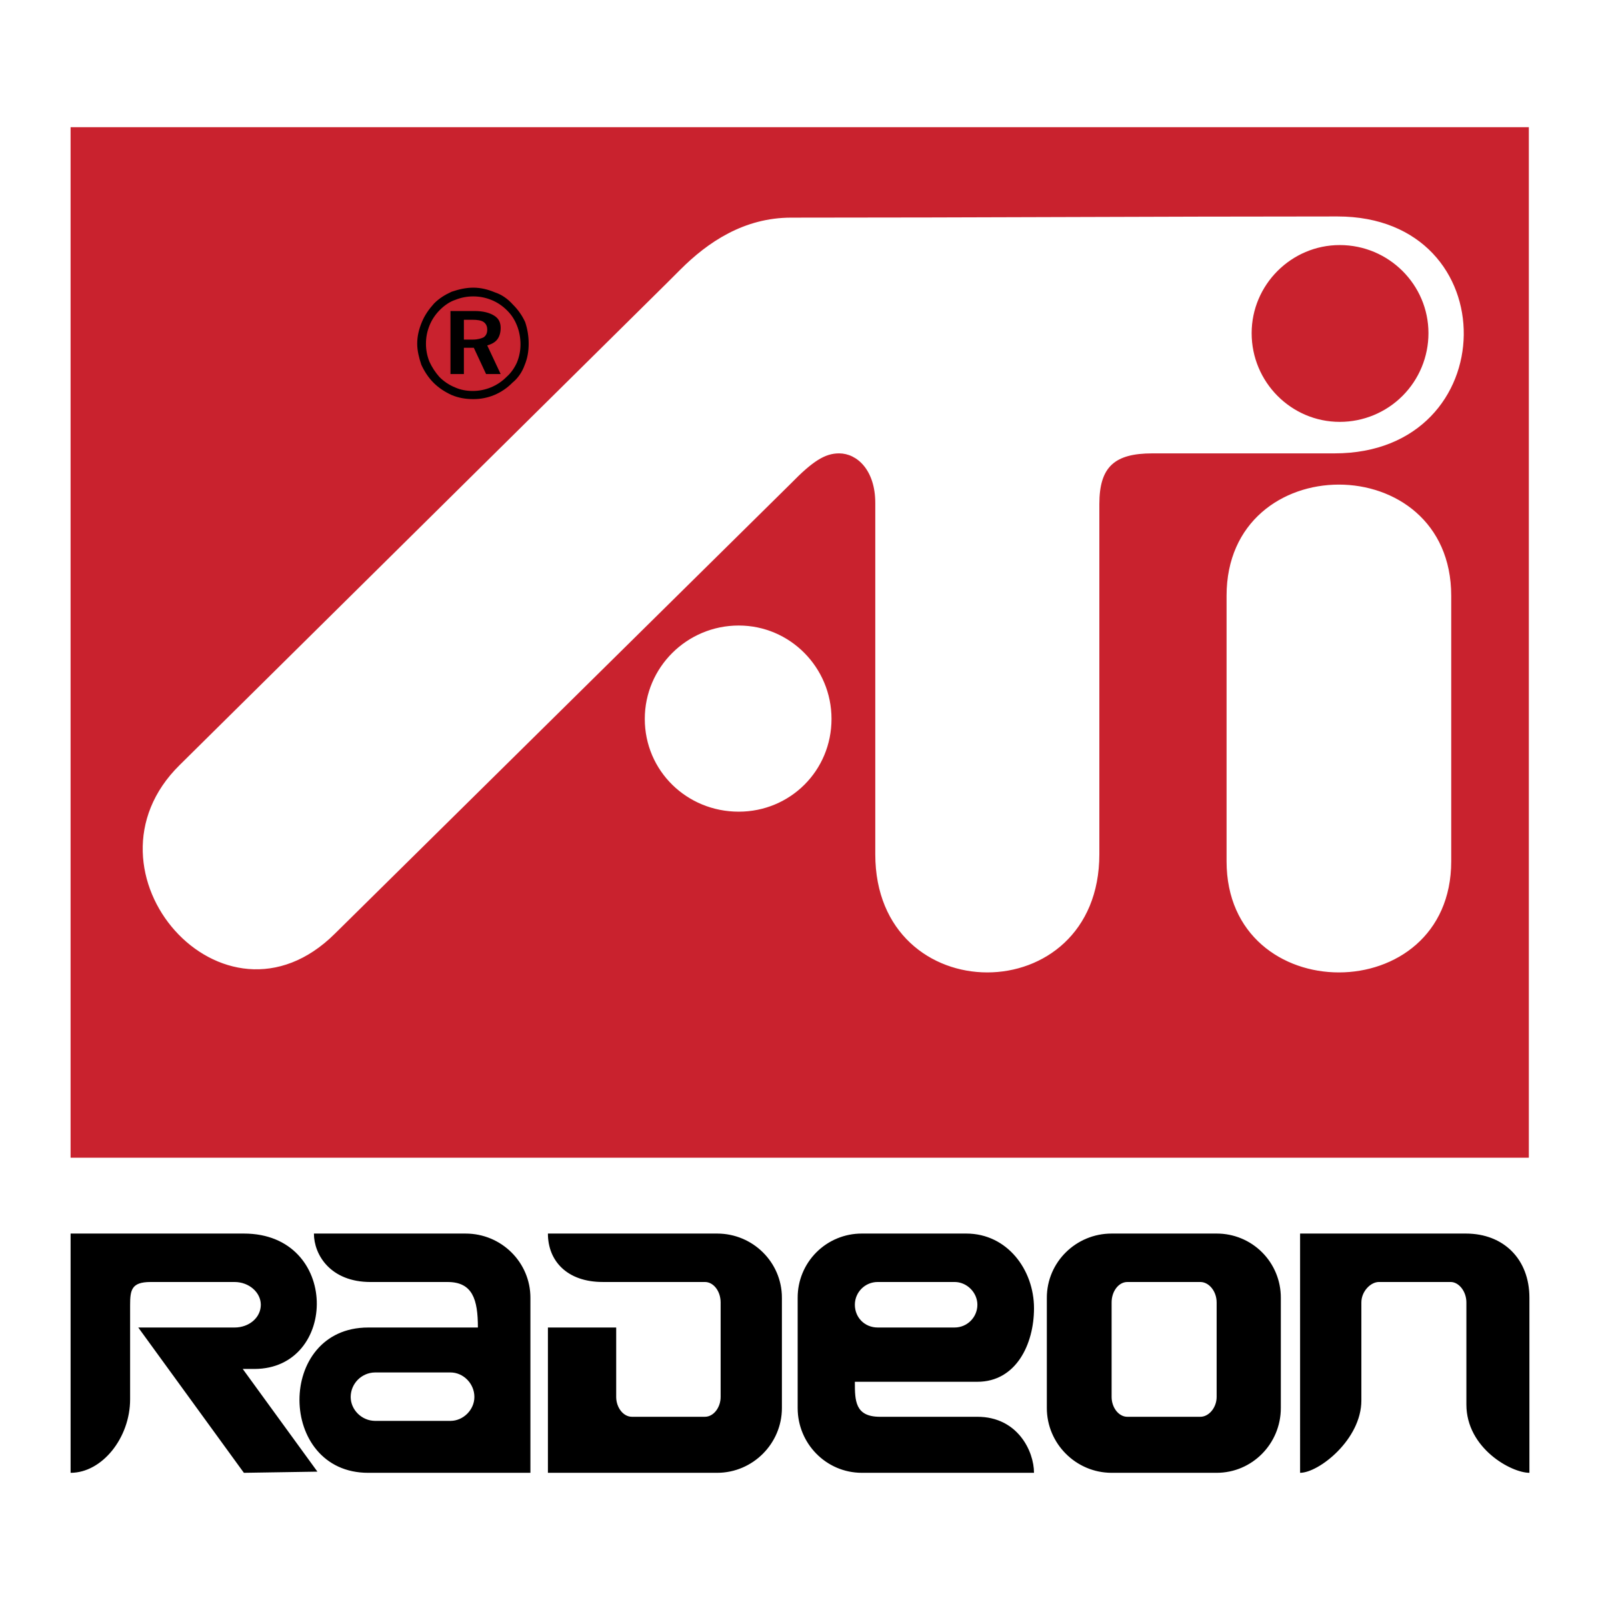 Ati Logo